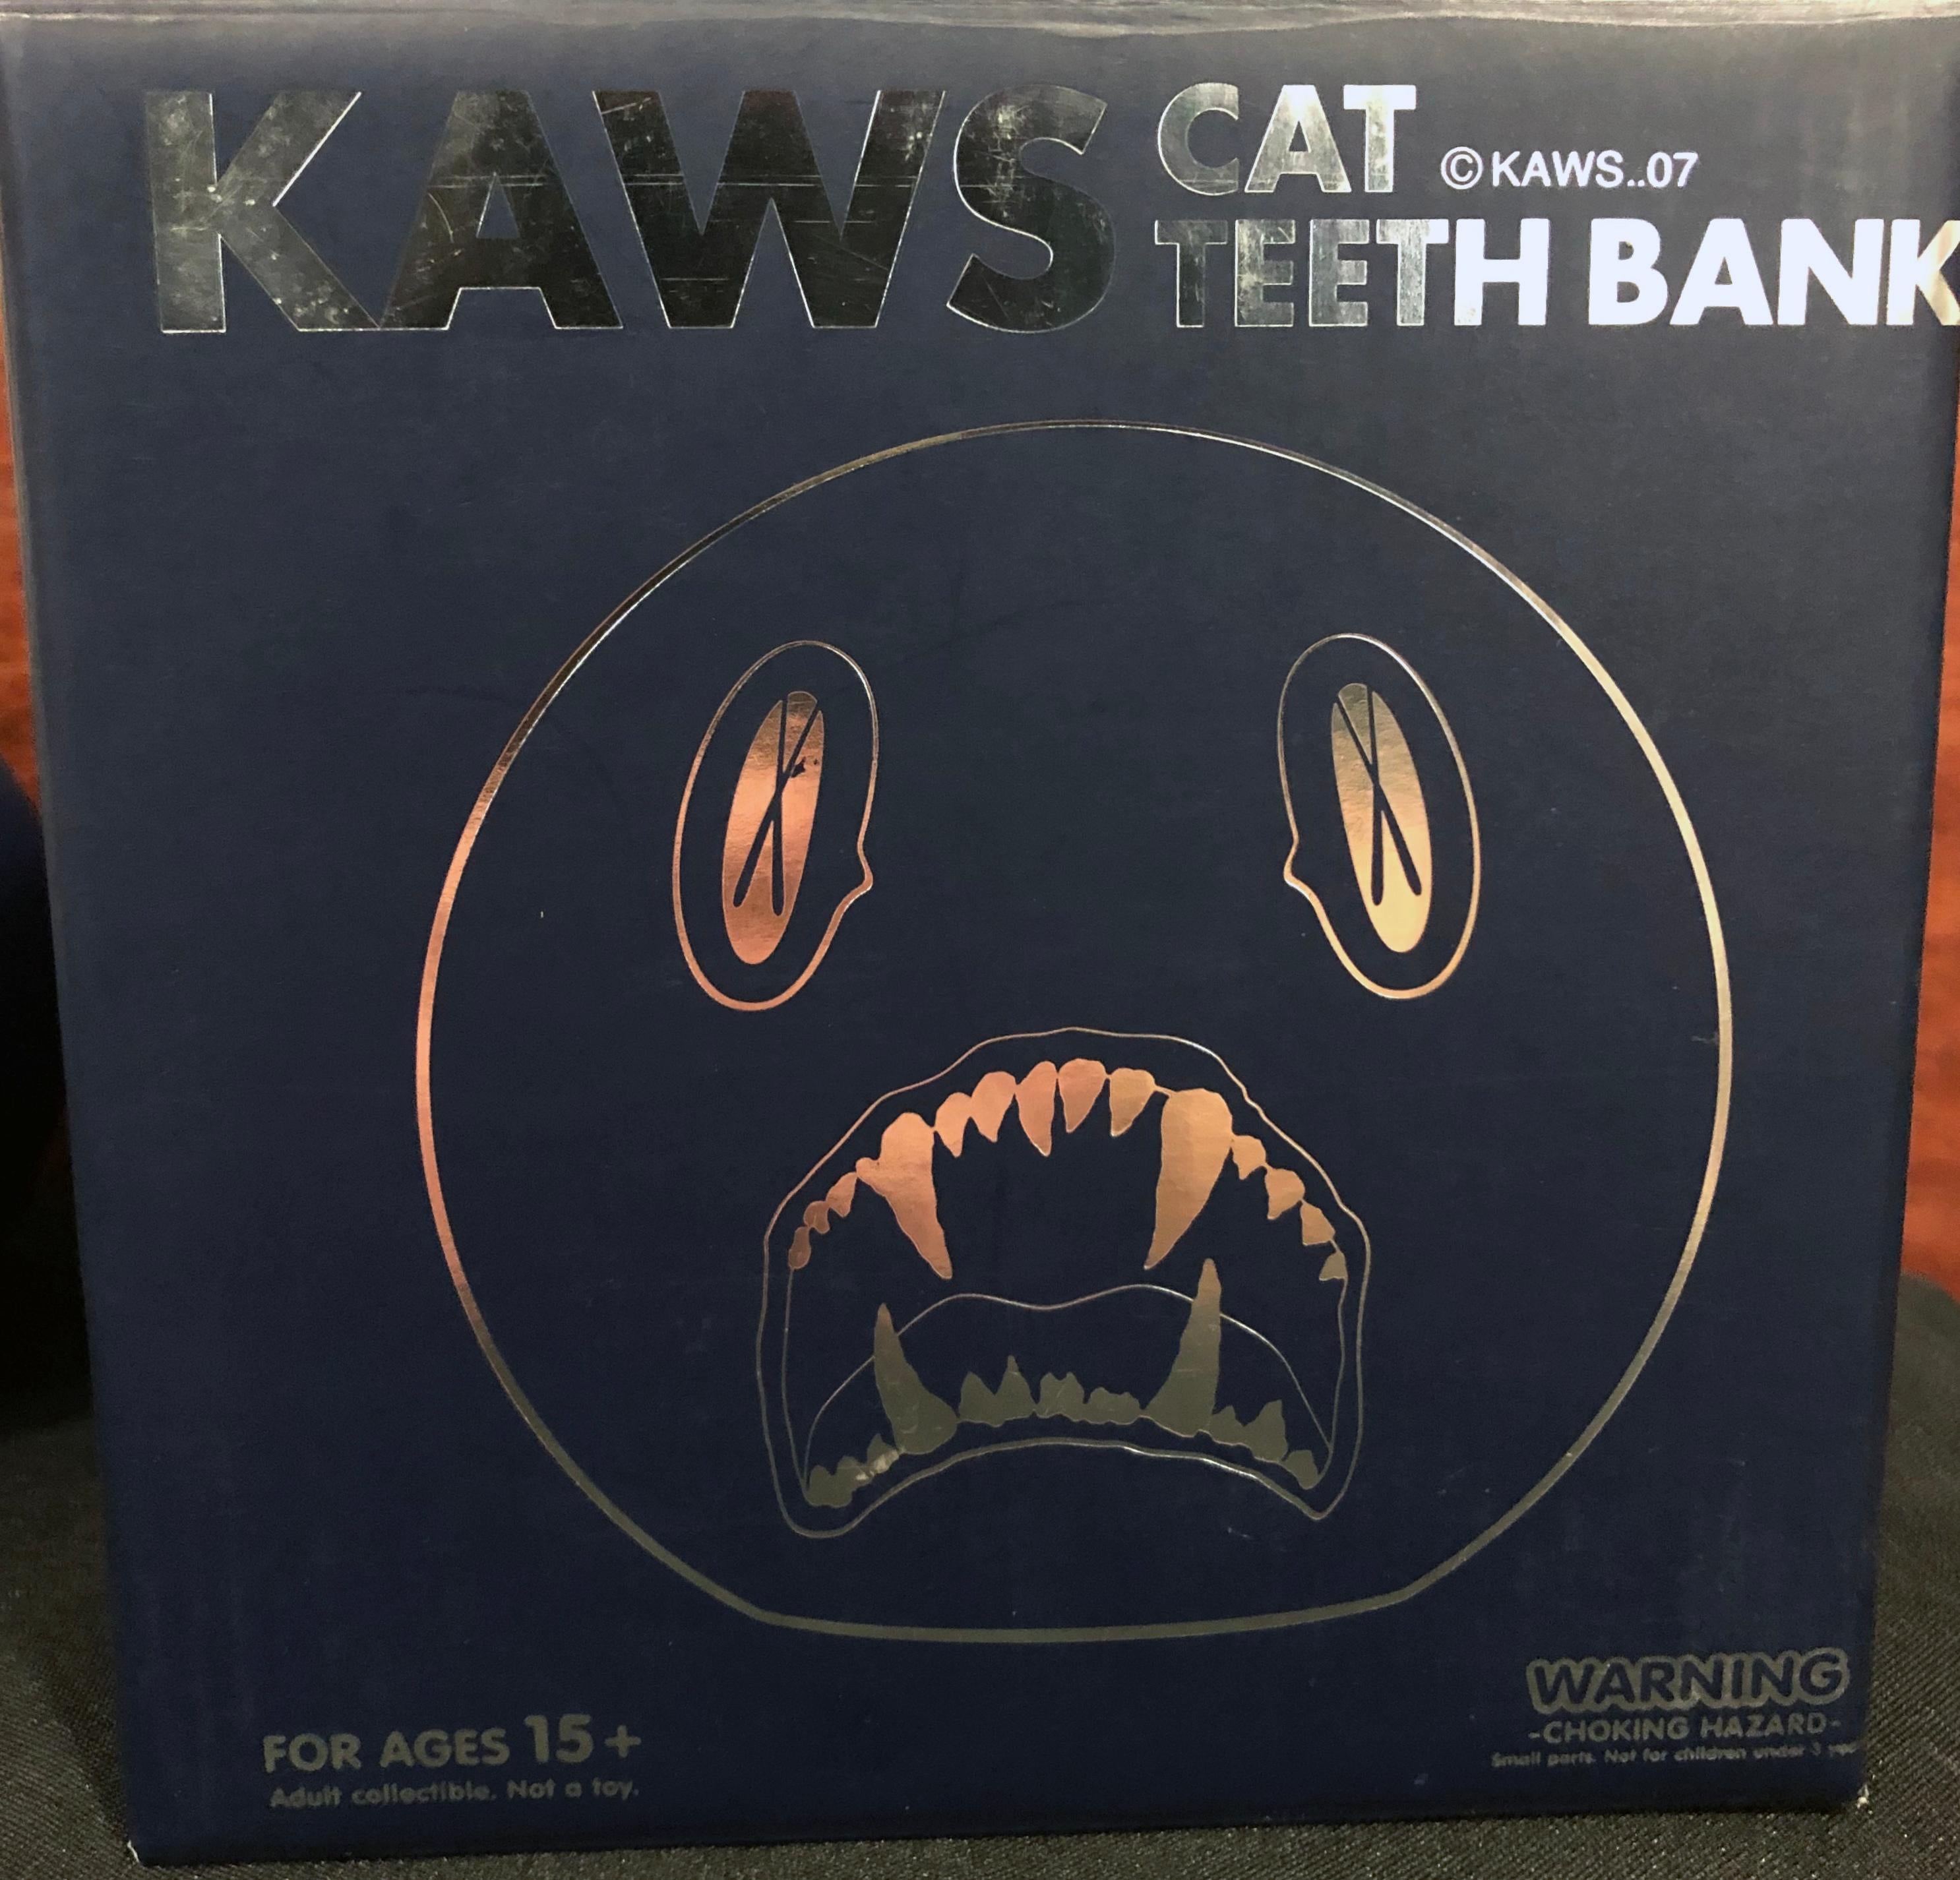 KAWS Cat Teeth Bank 2007 3